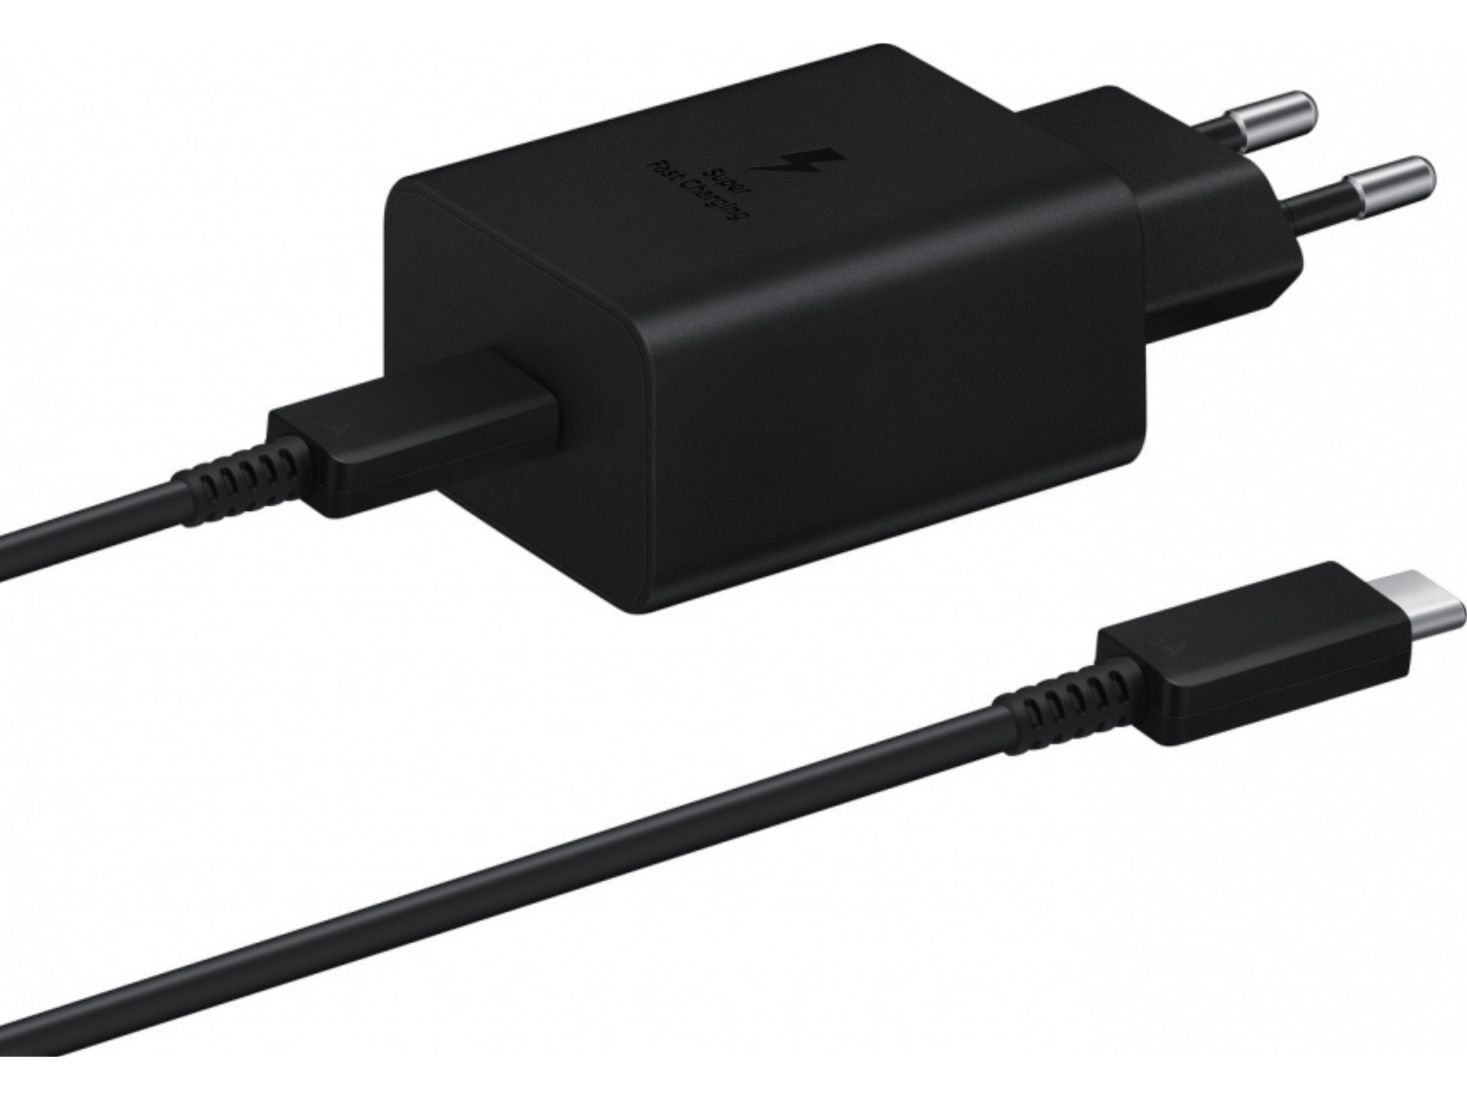 фото Сетевое зарядное устройство Samsung Super Fast Charger USB Type-C 45W + Cable Type-C (черный)